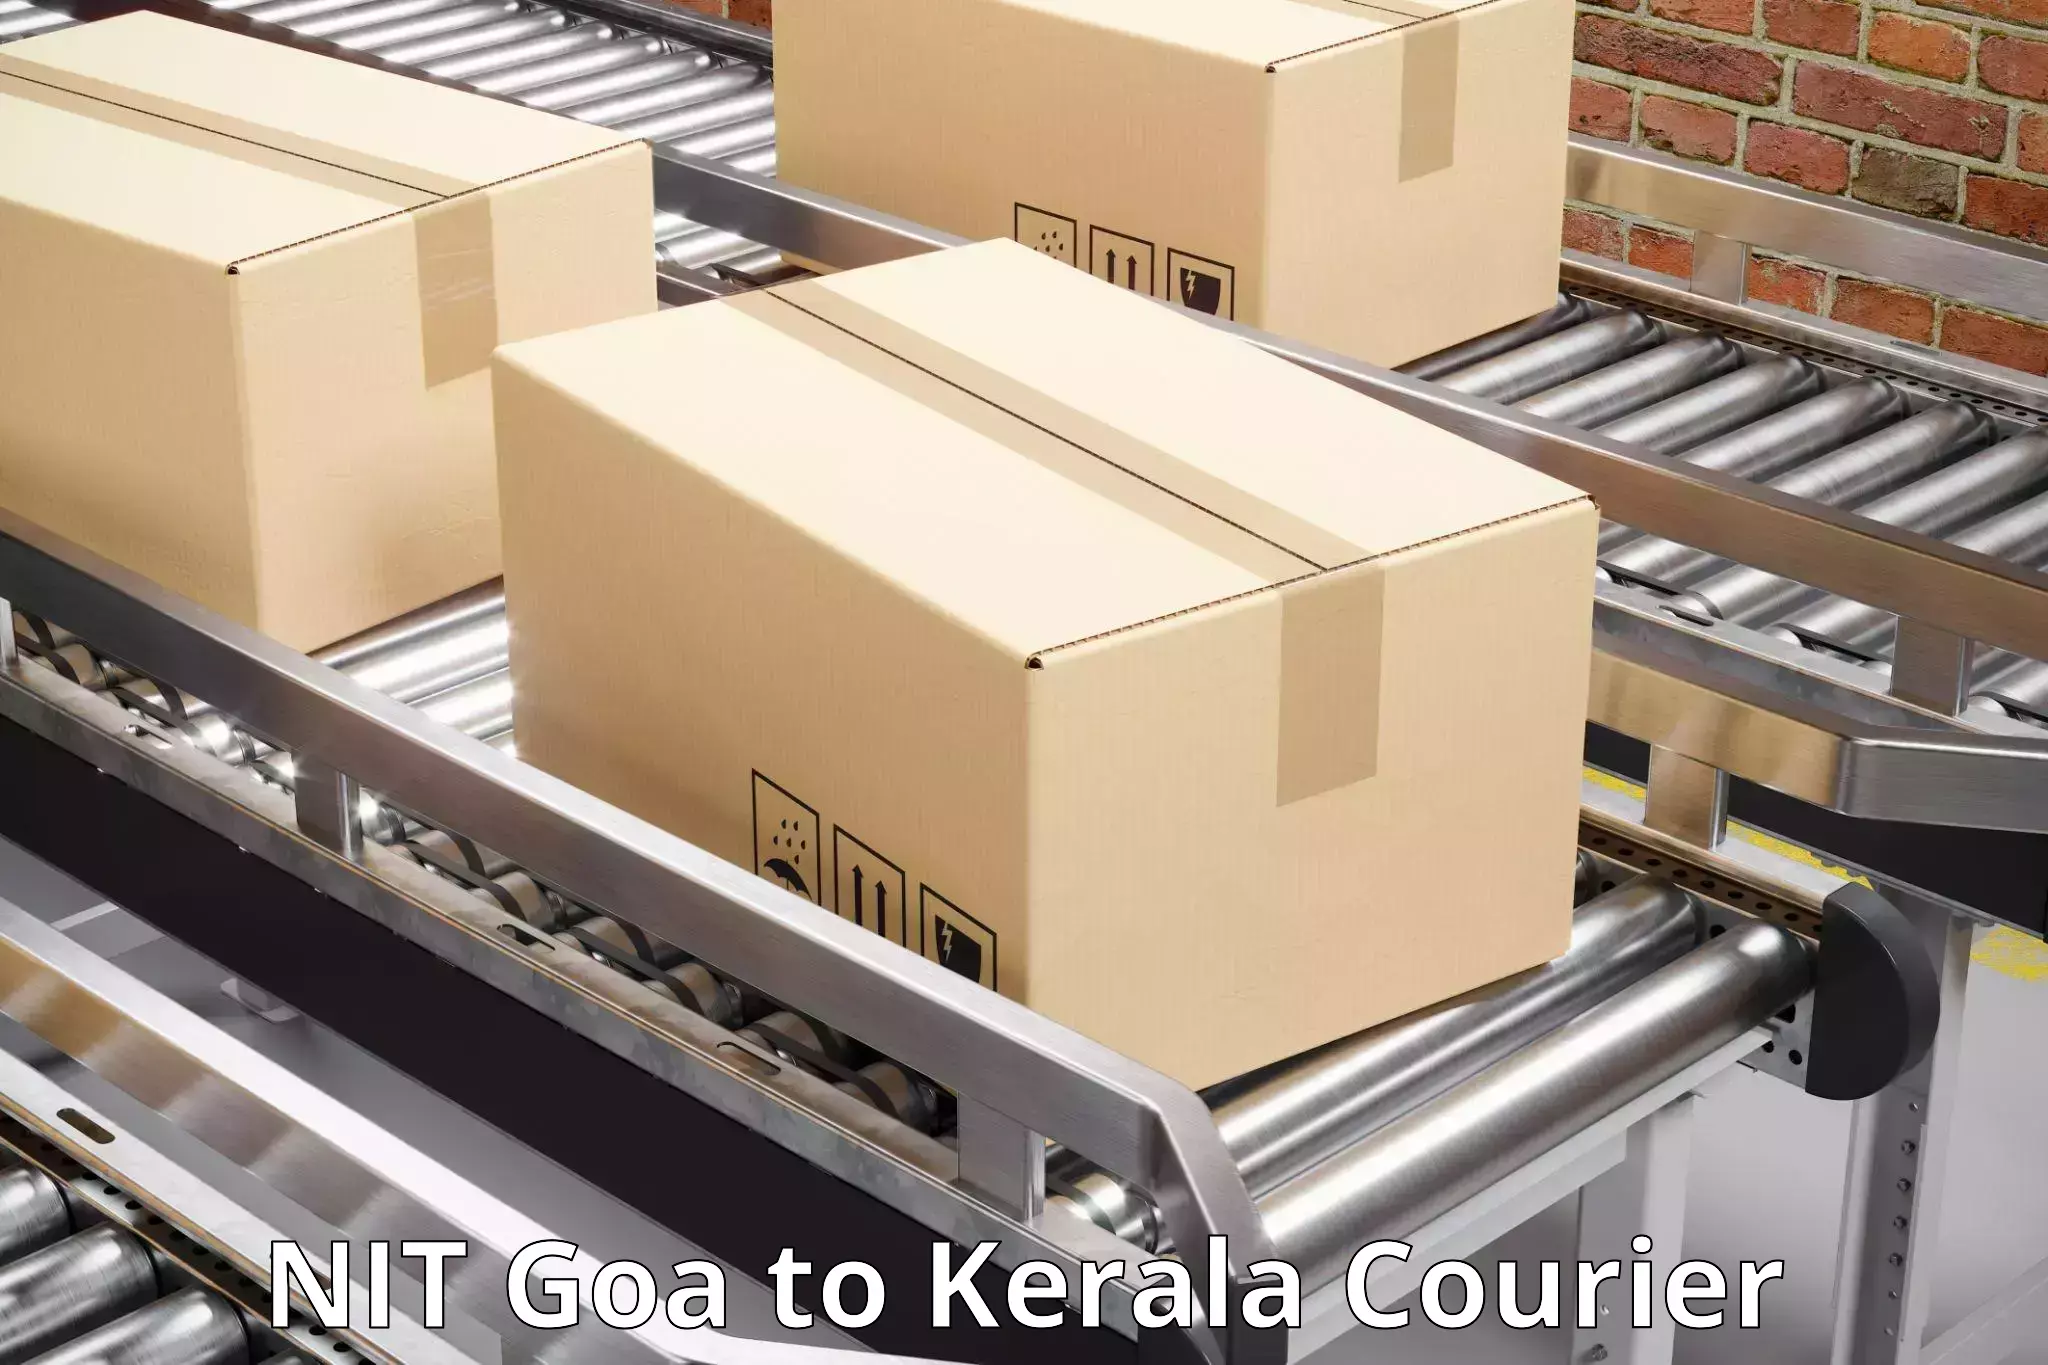 Express logistics service NIT Goa to Mundakayam